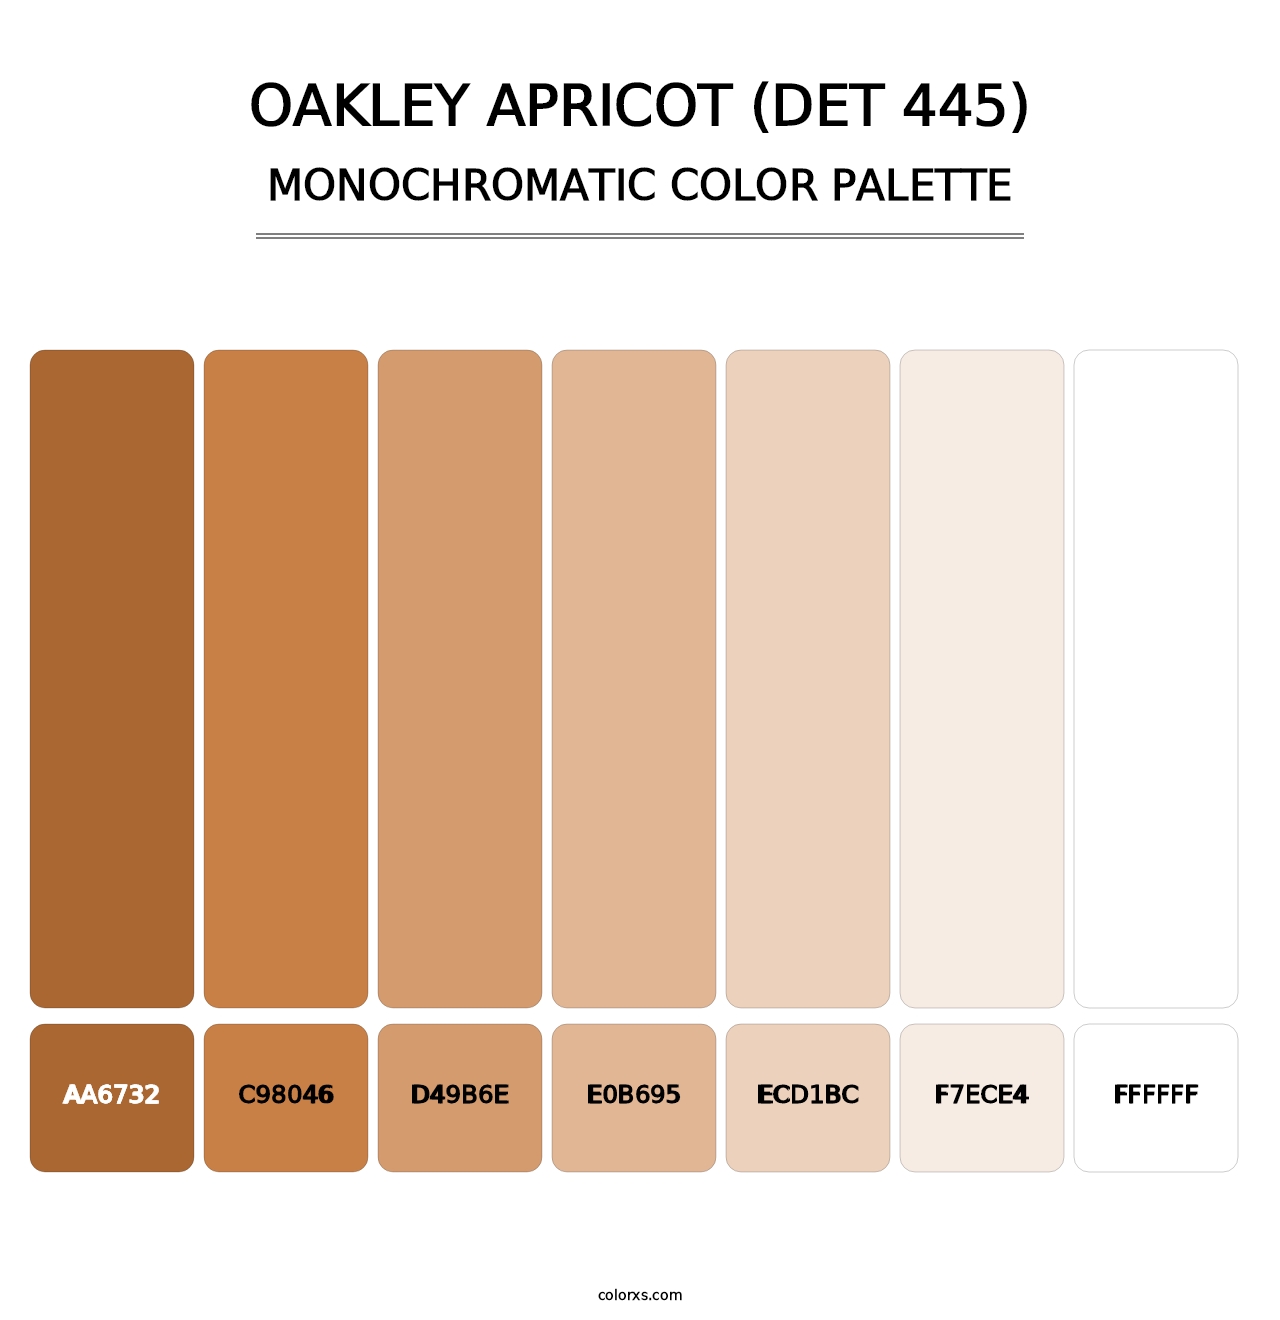 Oakley Apricot (DET 445) - Monochromatic Color Palette